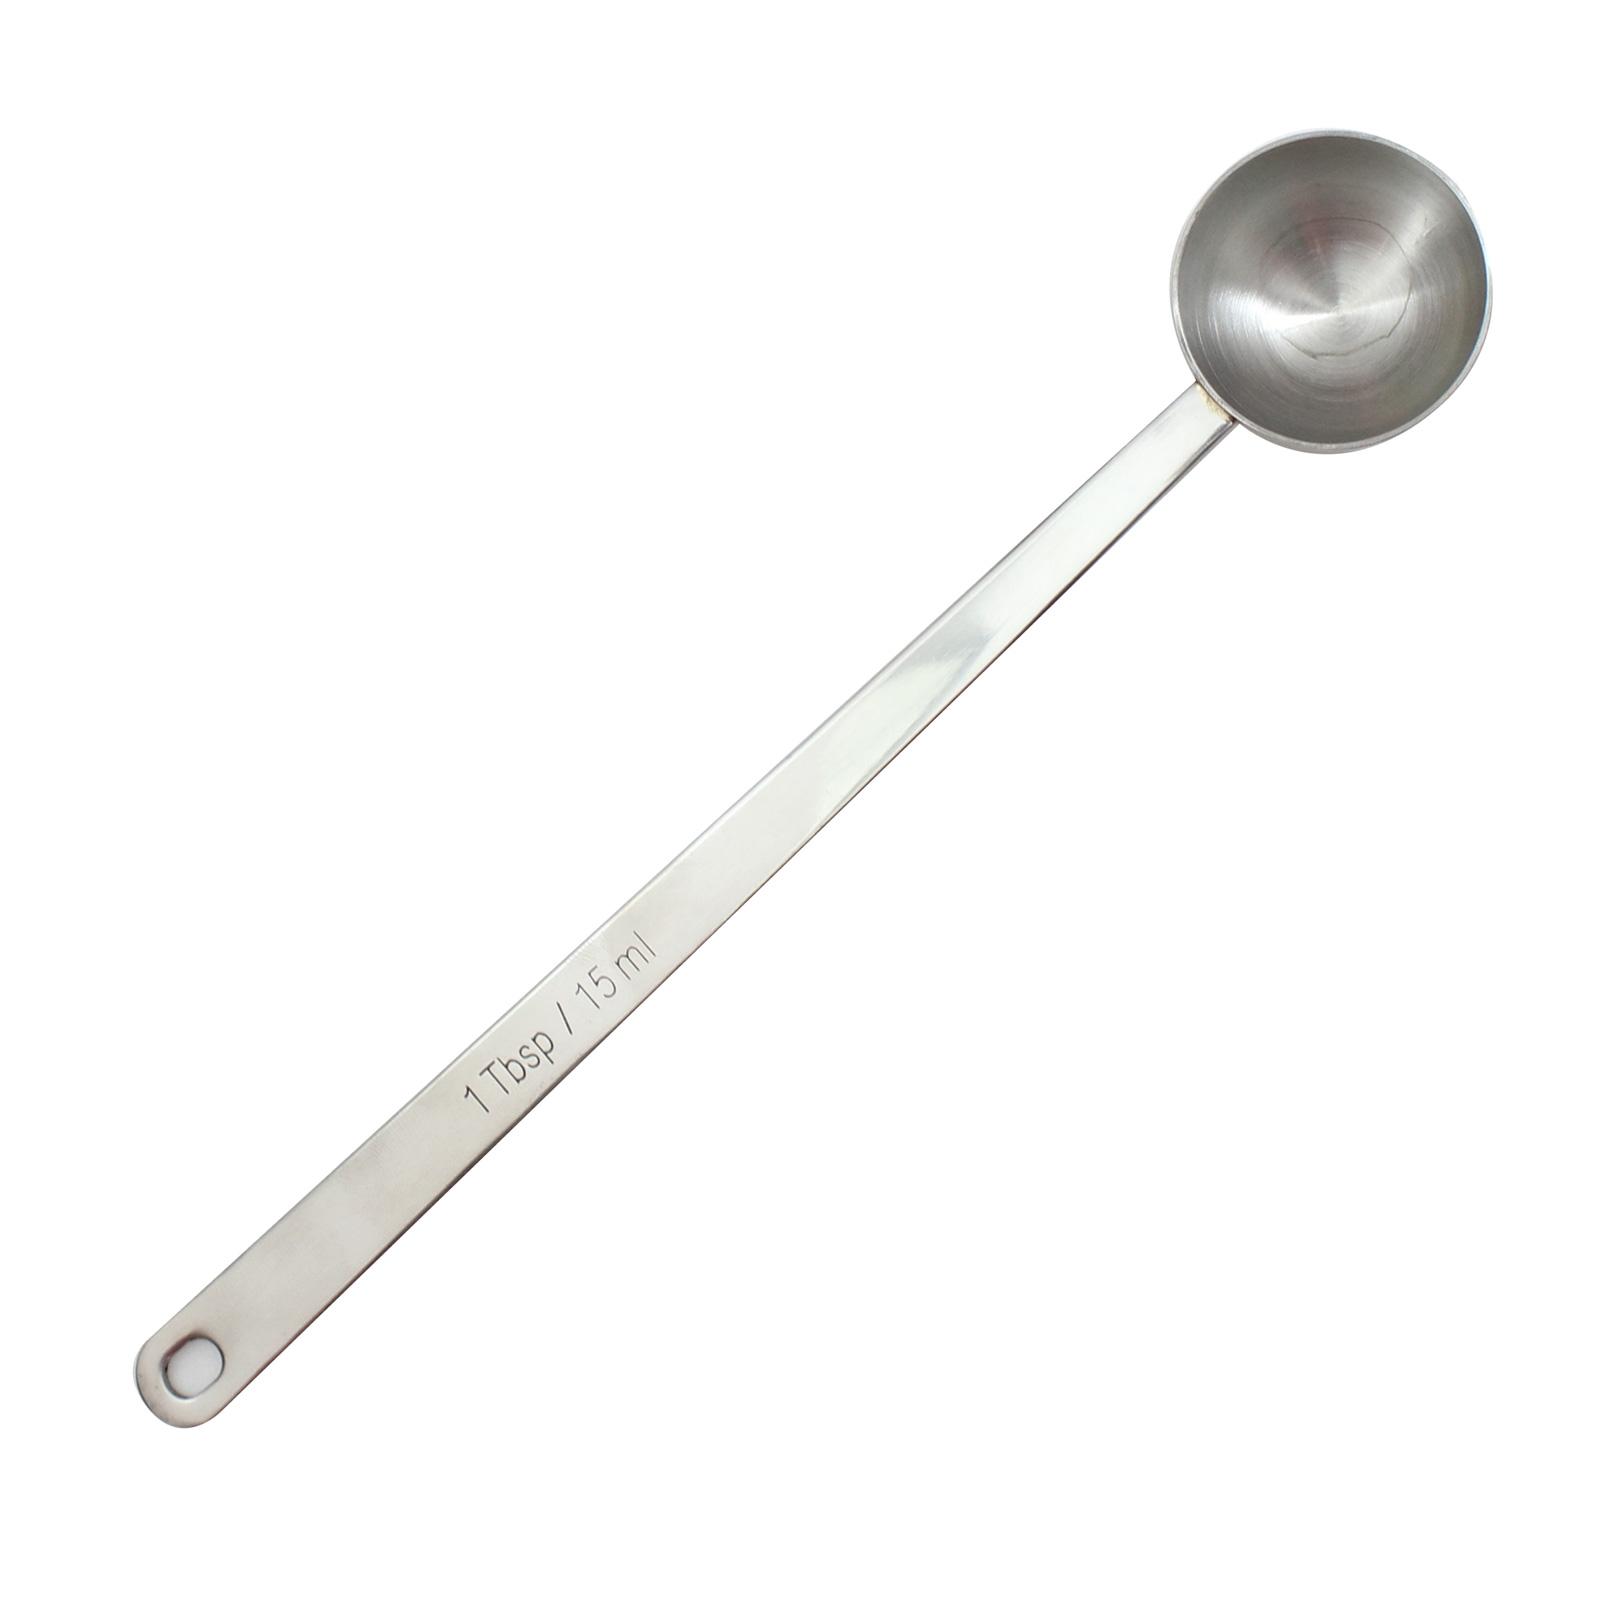 1 Tbsp Stainless Steel Measuring Spoon